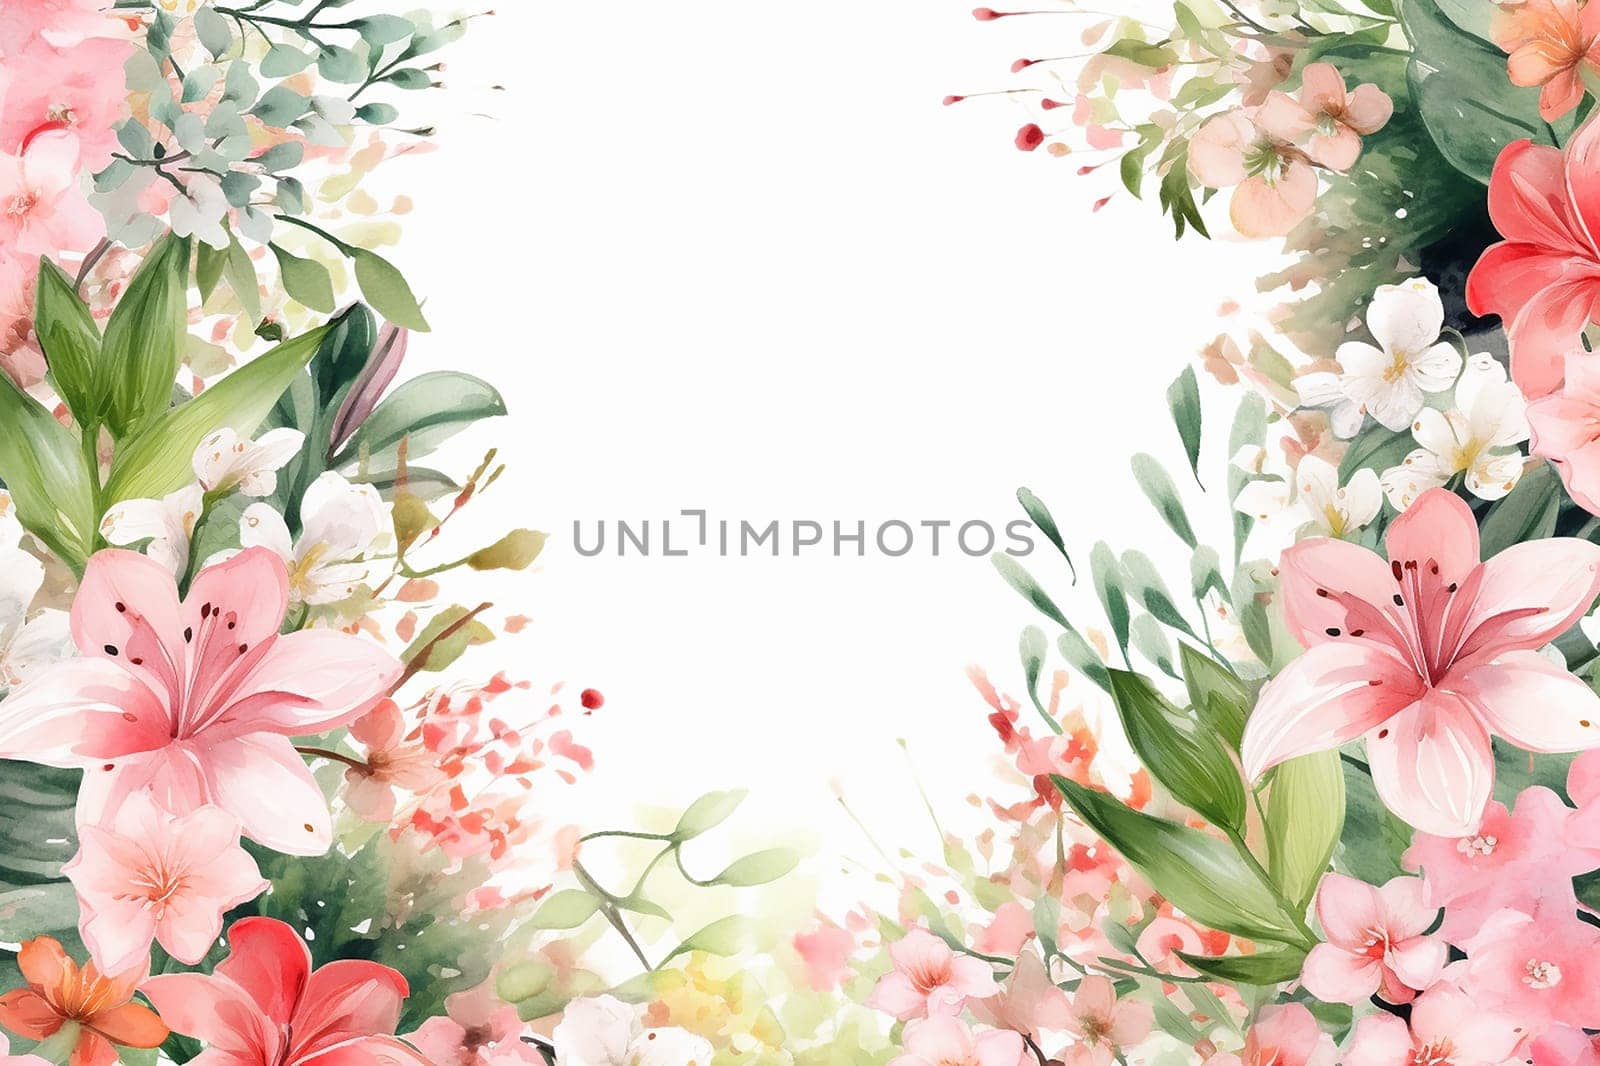 Elegant floral arrangement on a white background.